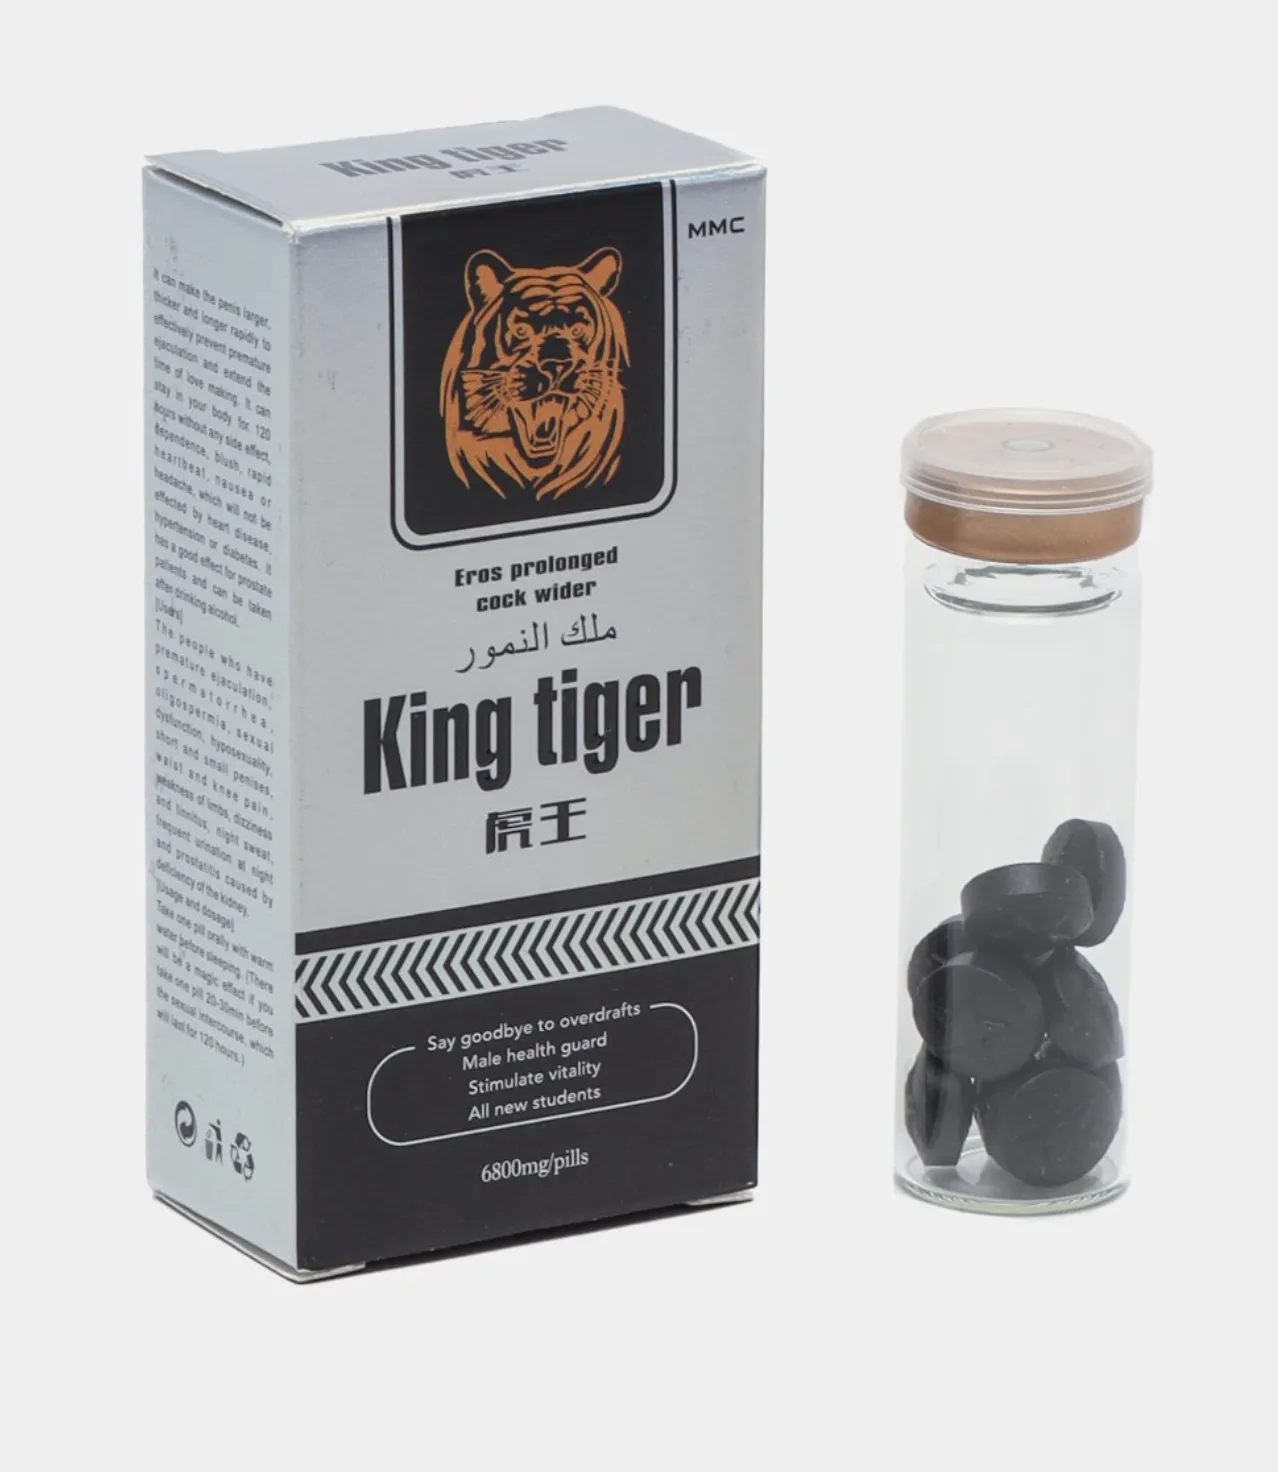 Препарат для потенции "King tiger"#1